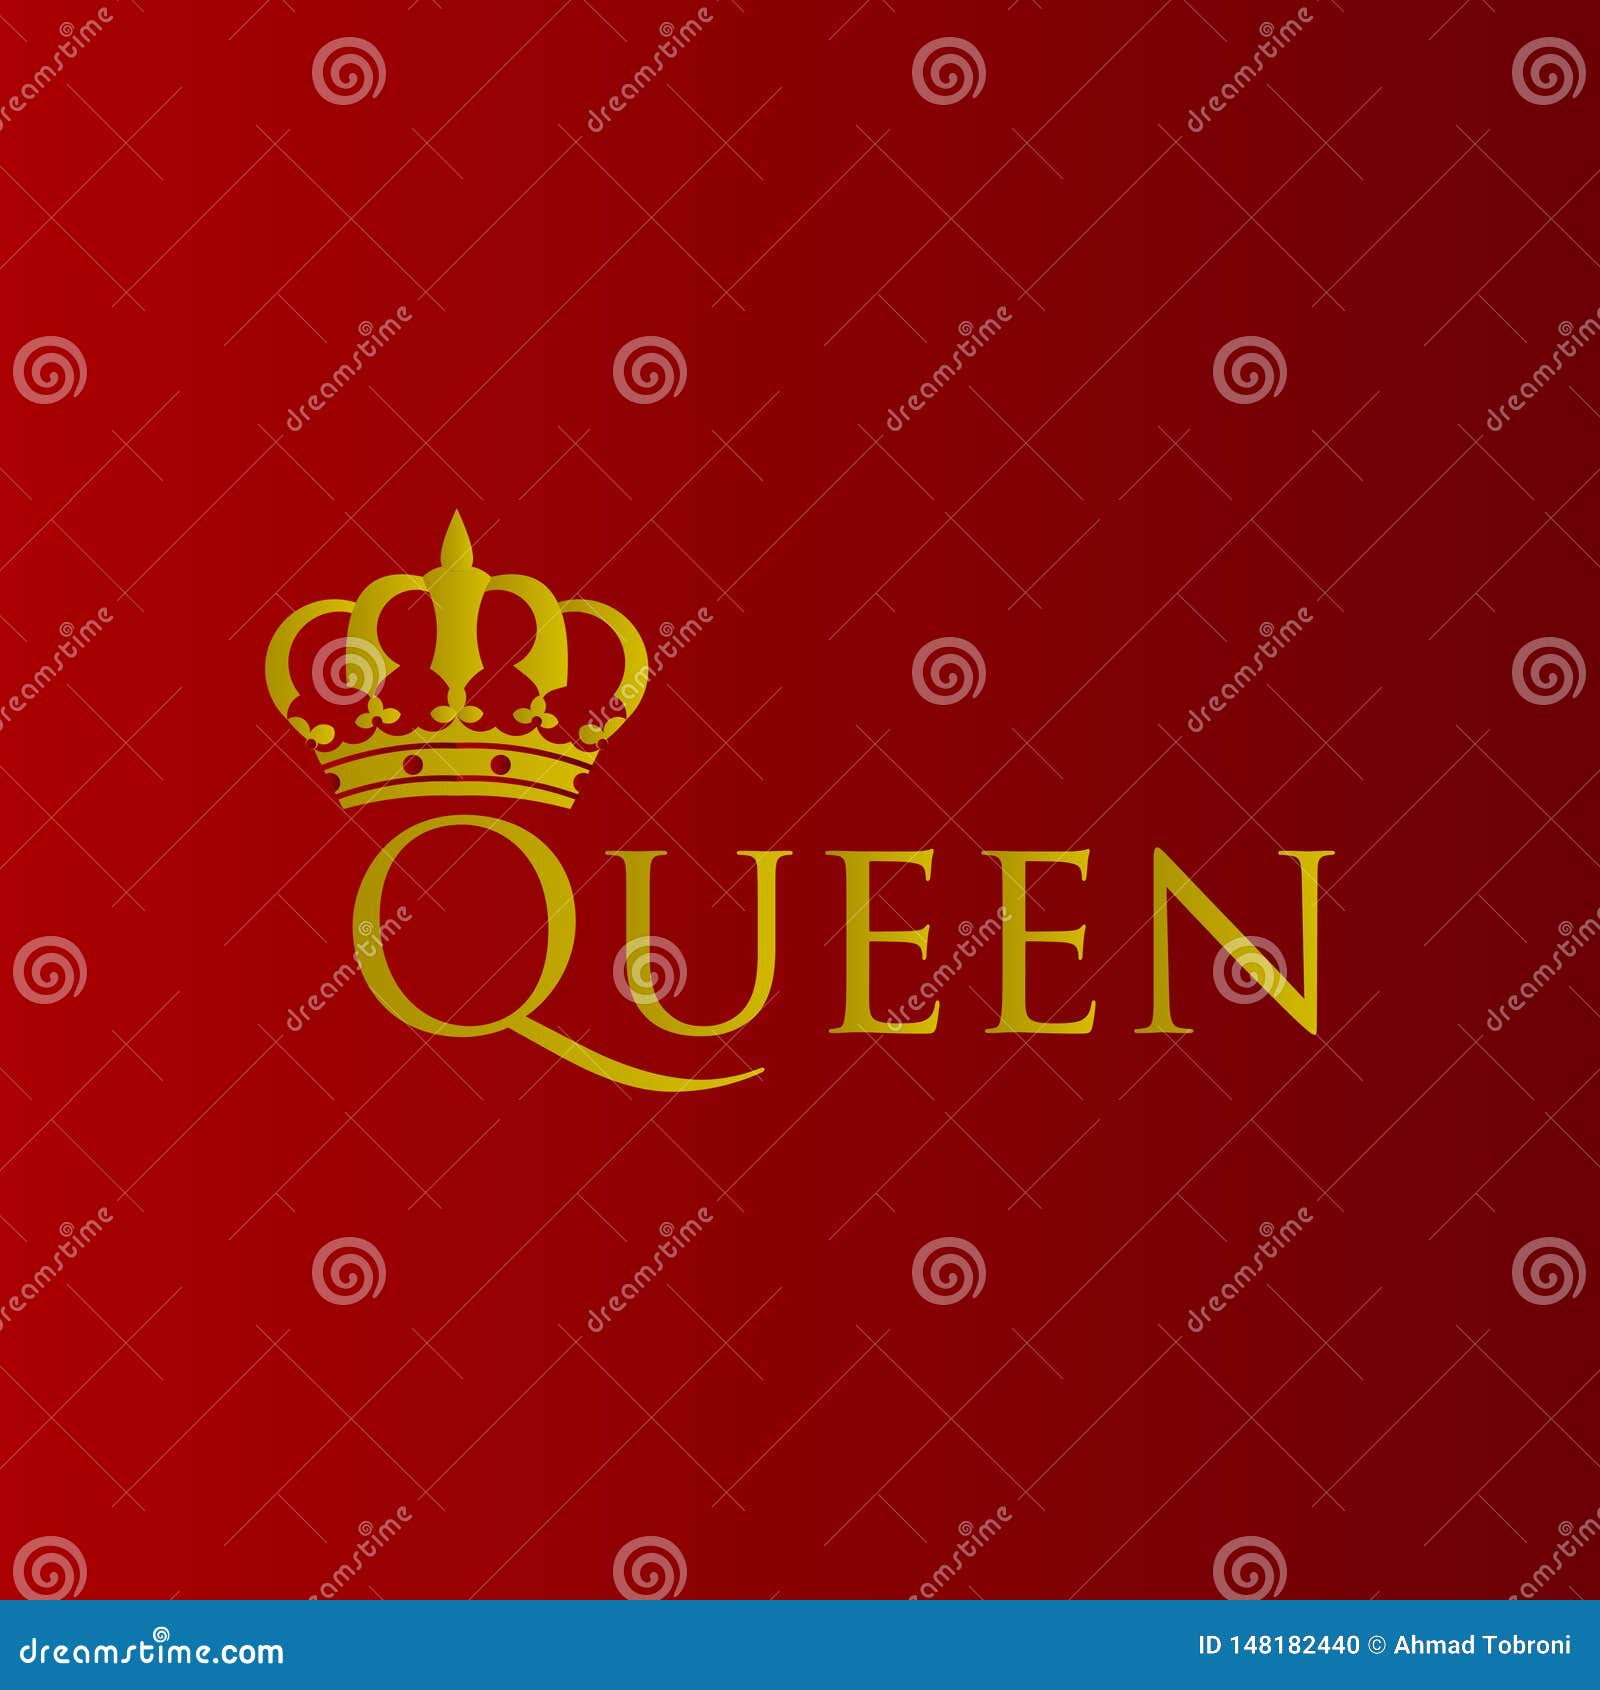 Regal Queen Background Design for Elegant Visuals